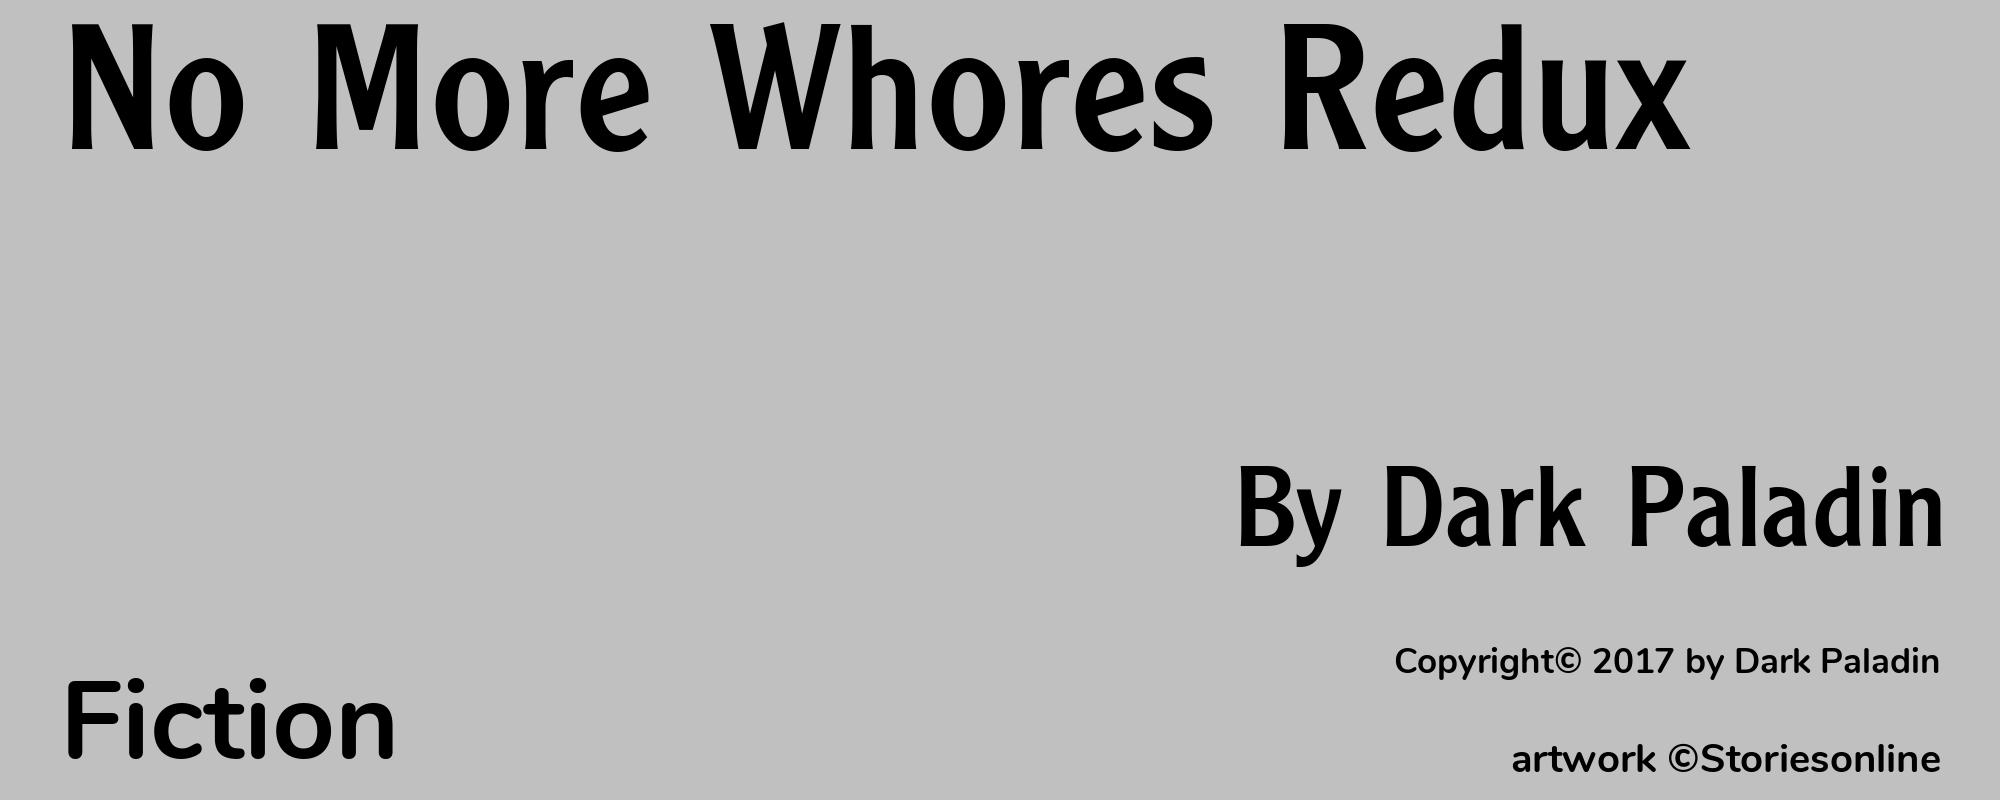 No More Whores Redux - Cover